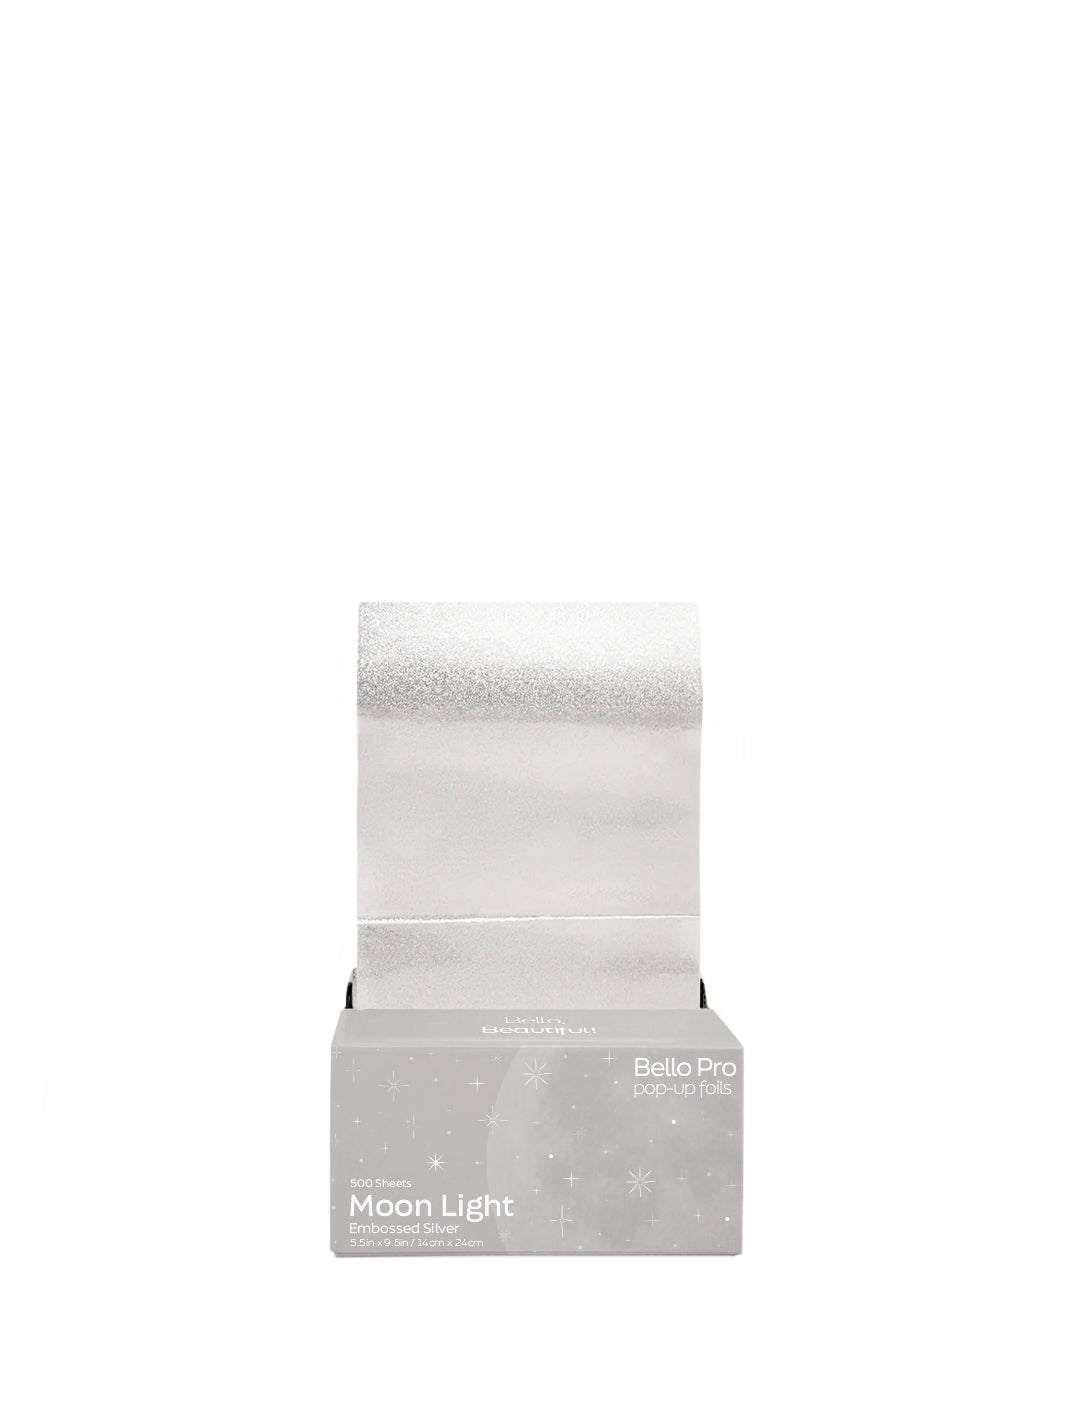 Silver Foil, 9.5 x 9.5, Single Sheet